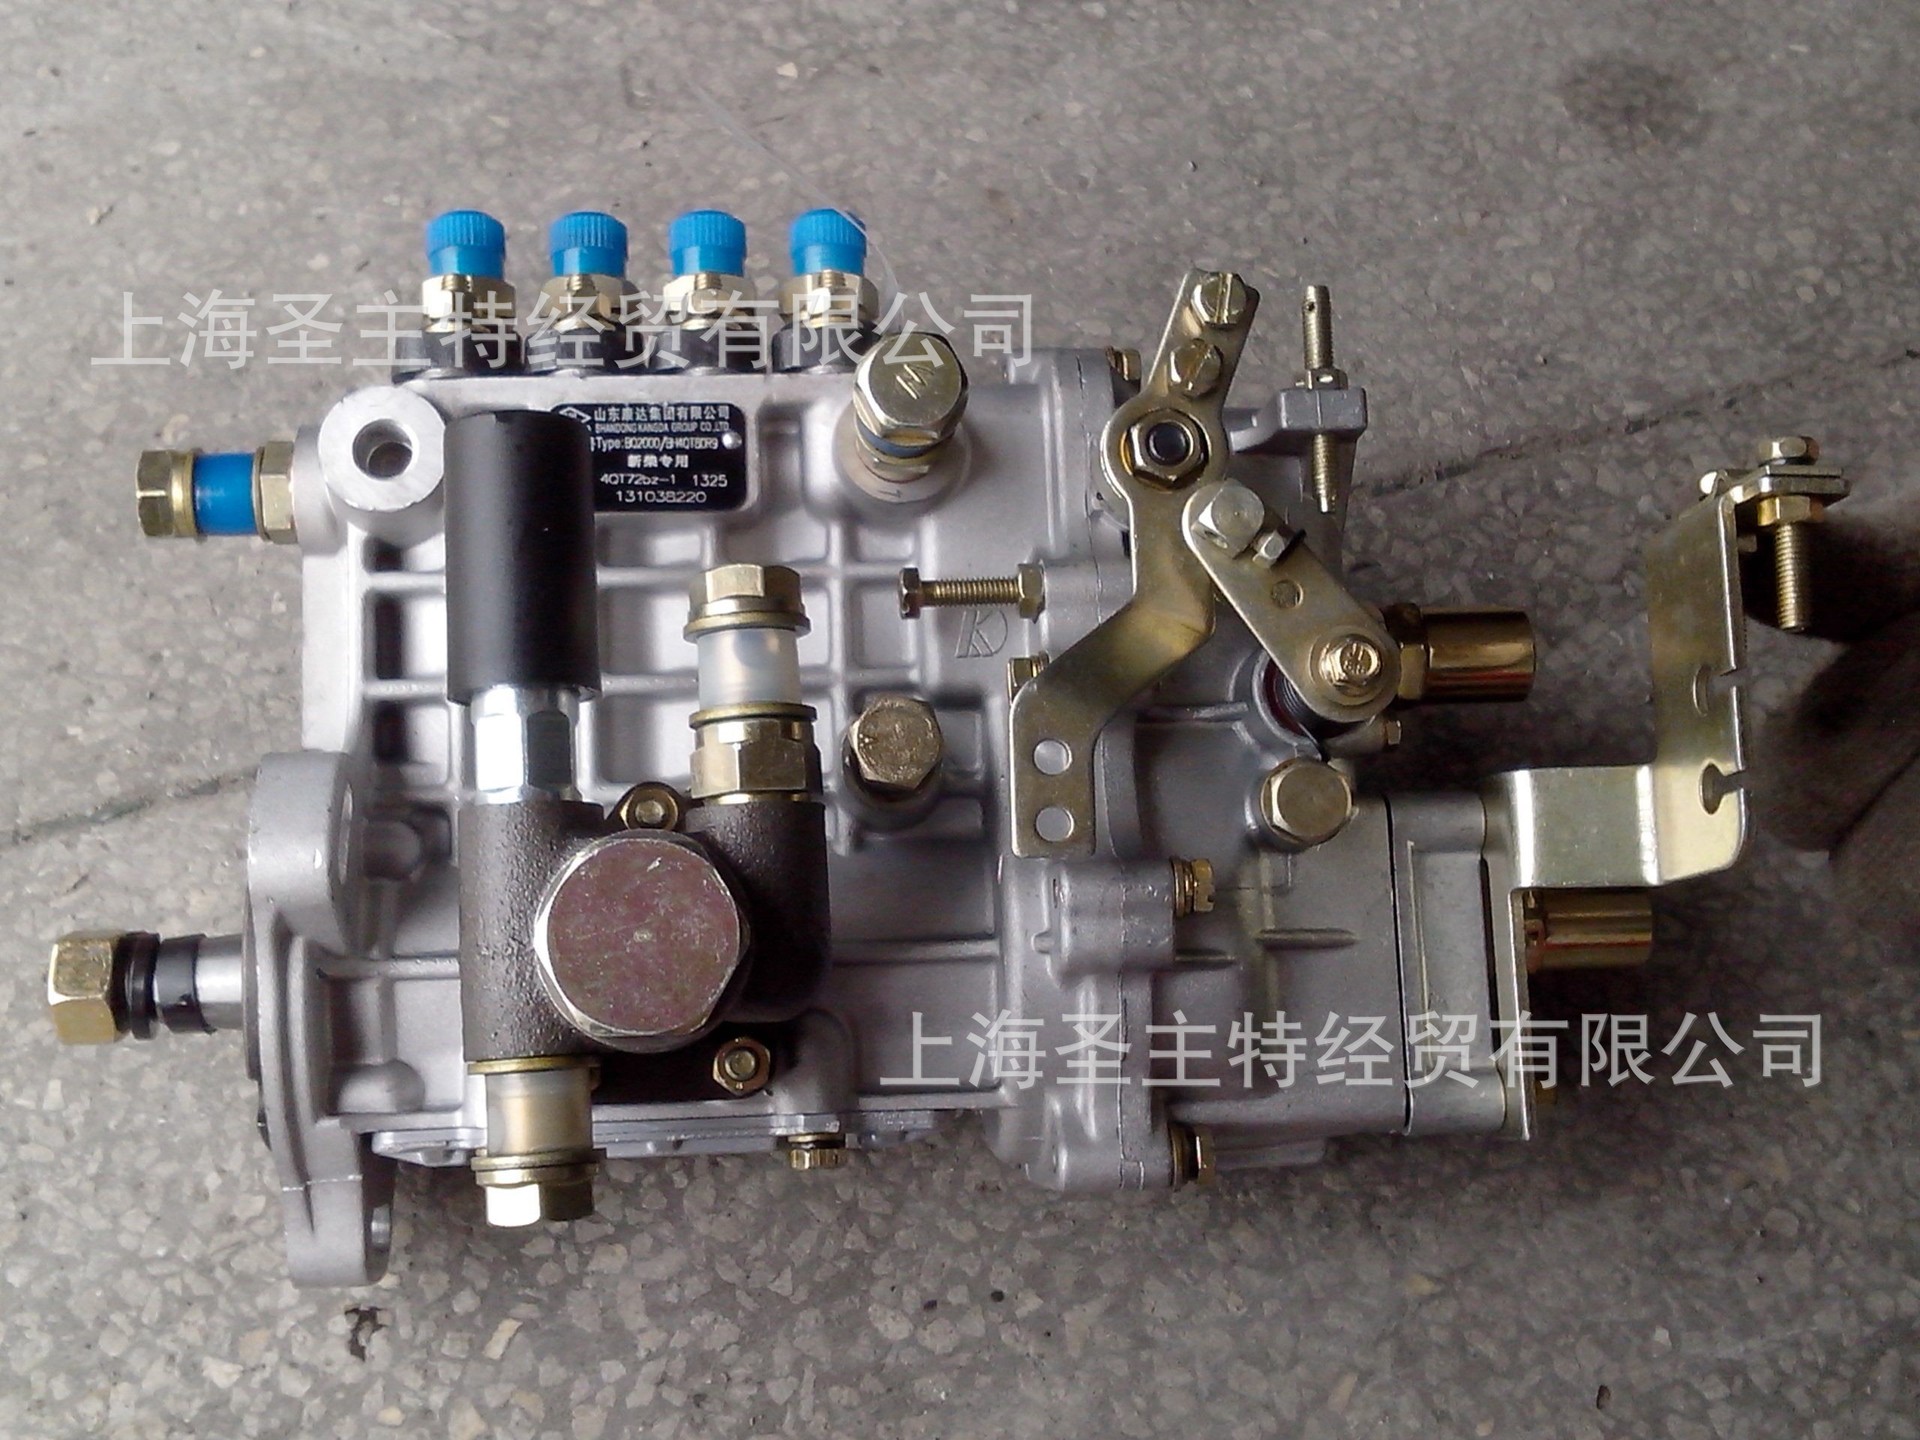 上海新柴490bpg高压油泵喷 油泵 柴油机高压油泵详情 